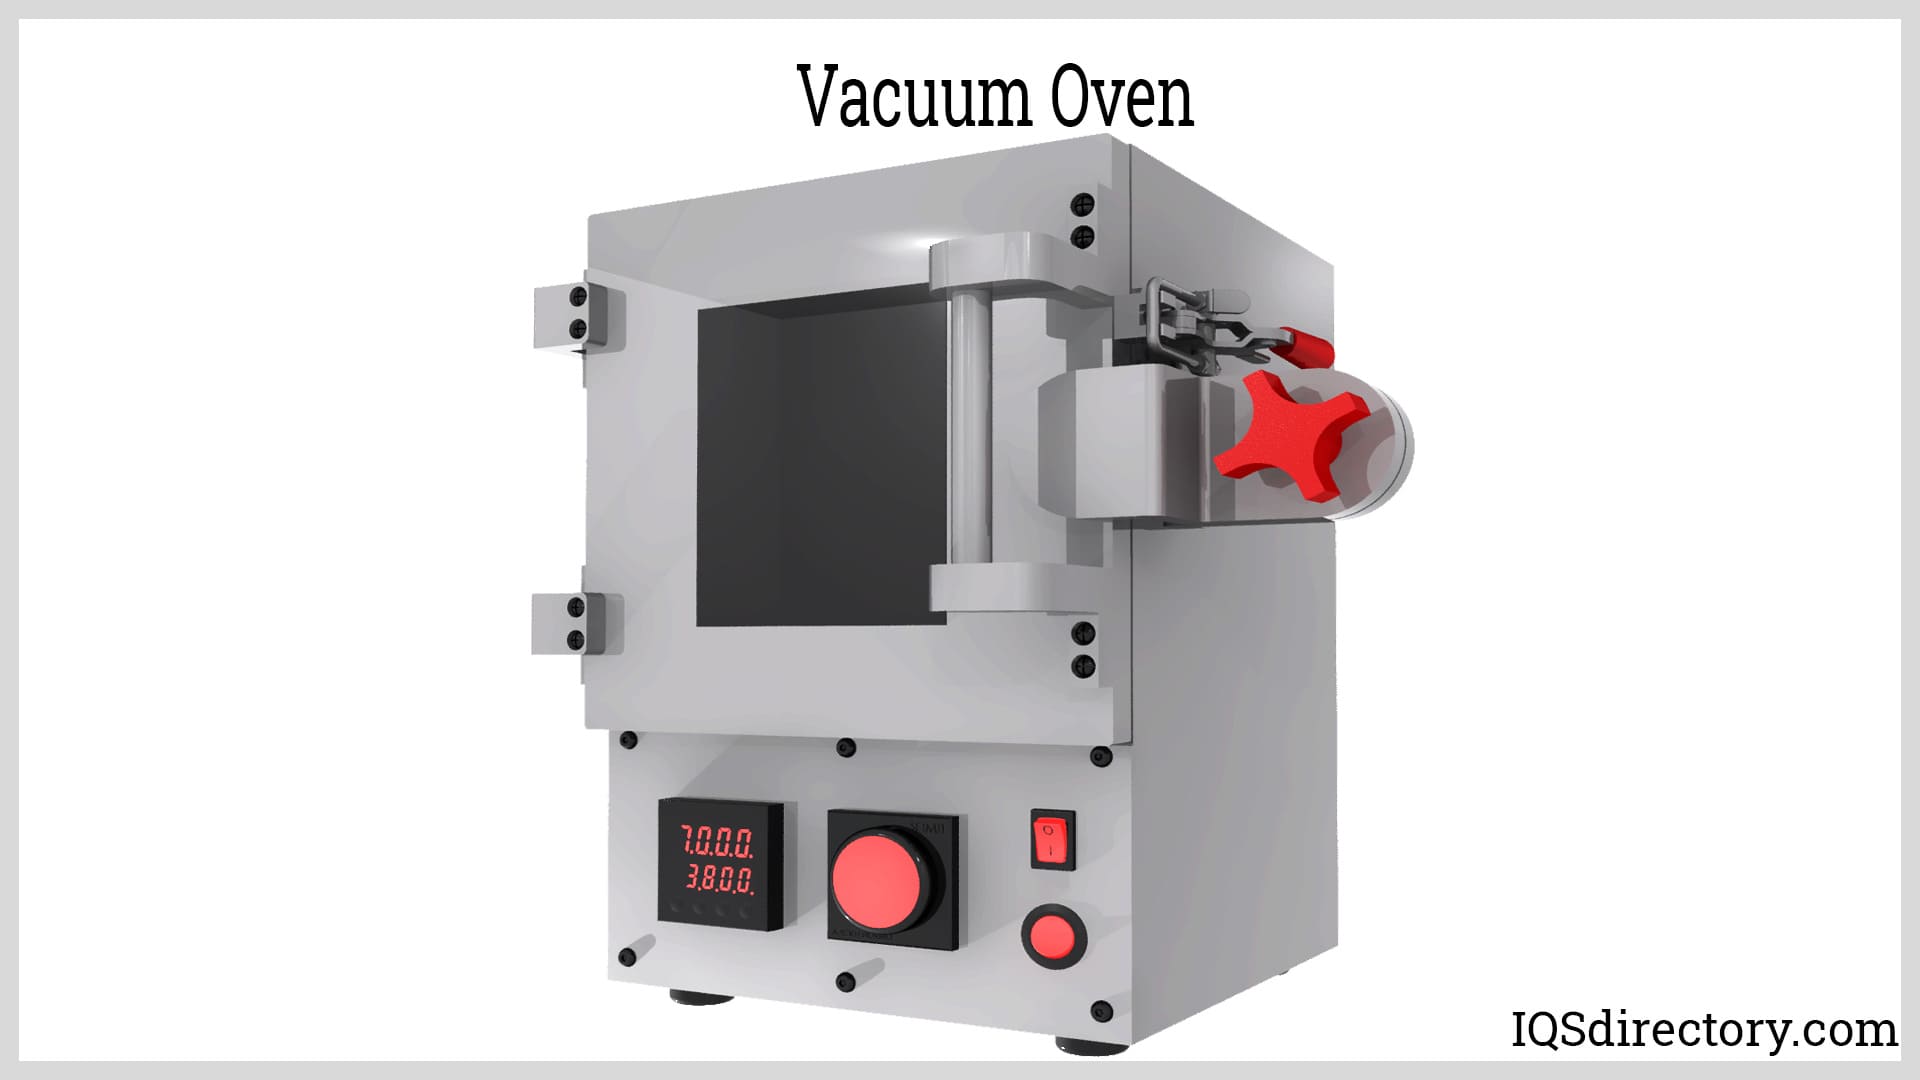 https://www.iqsdirectory.com/articles/industrial-oven/vacuum-oven.jpg